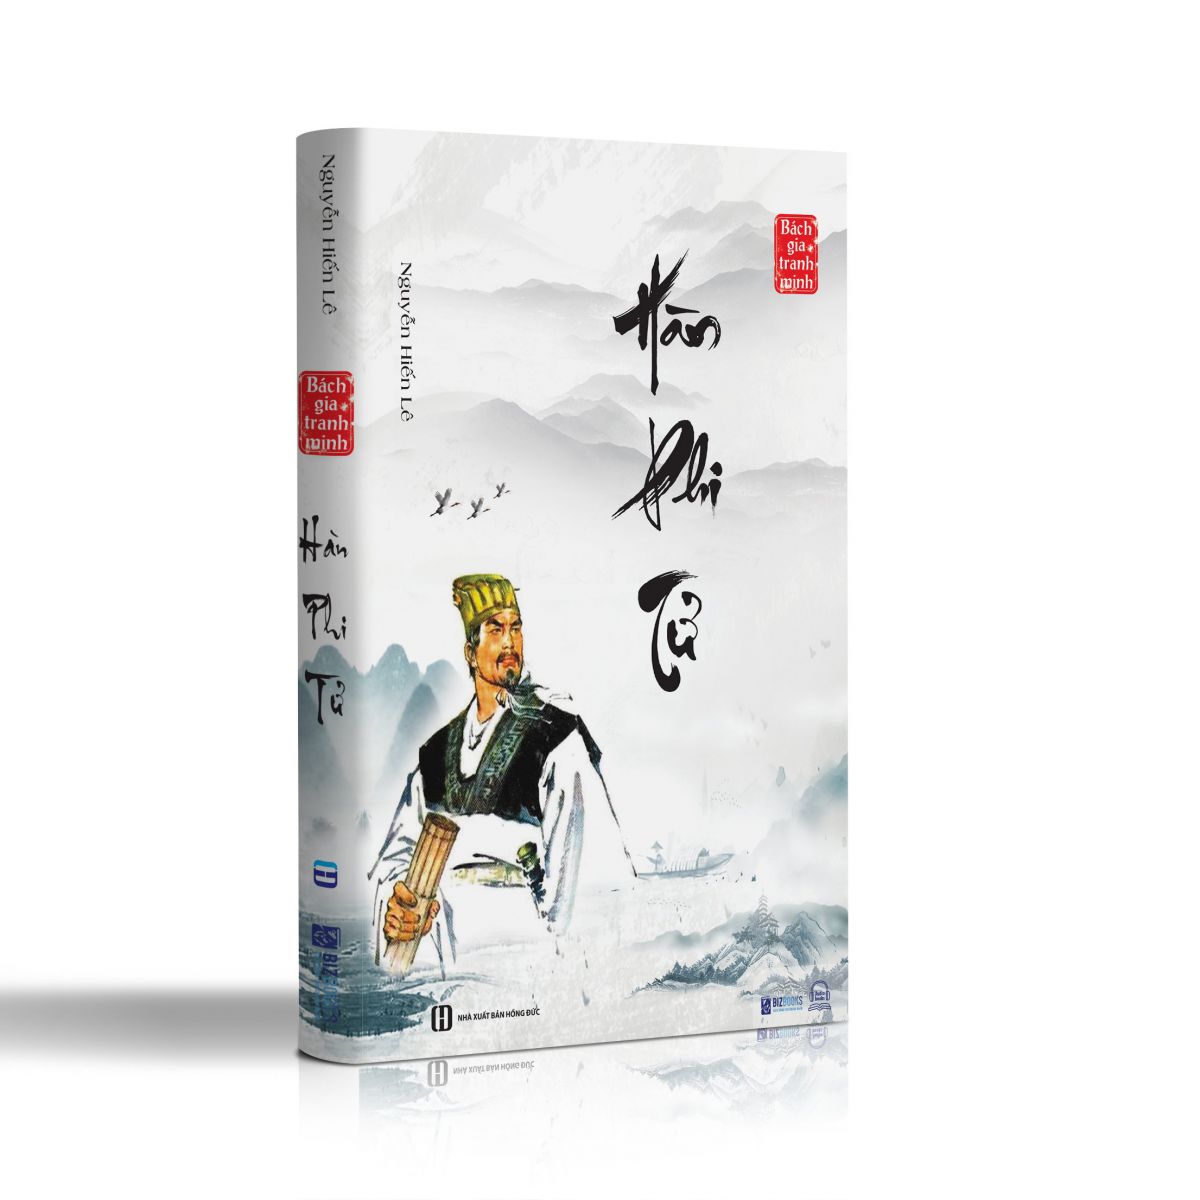 Bách  gia tranh minh - Bộ 8 cuốn sách quý hiếm của Nguyễn Hiến Lê 7